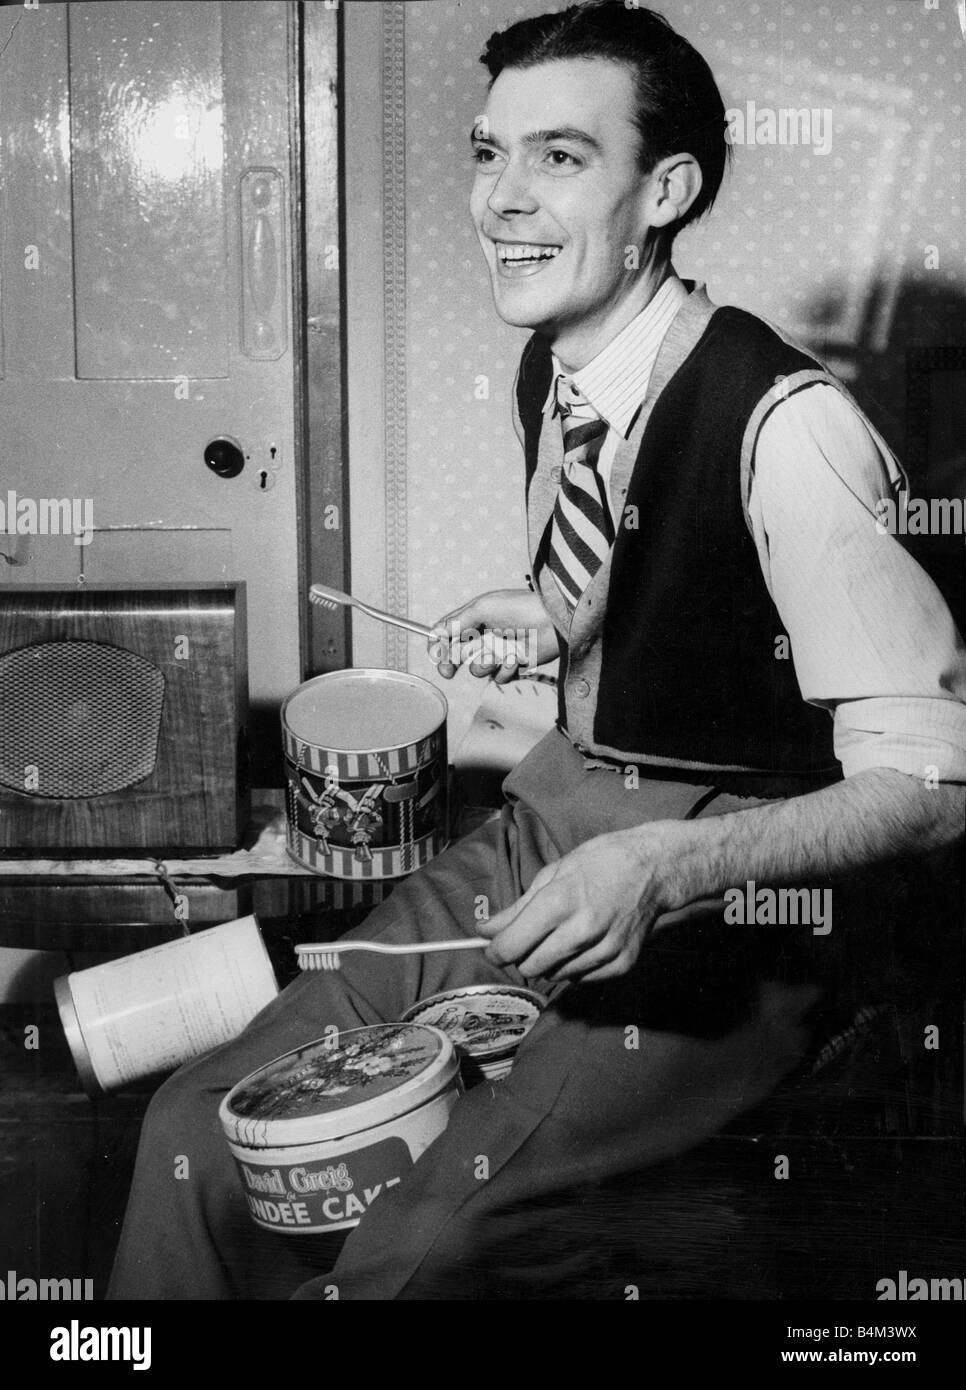 Un homme à jouer de la batterie à l'aide de brosses à dents pour les baguettes et des boîtes de dundee gâteau pour les instruments Octobre 1965 1960 Banque D'Images